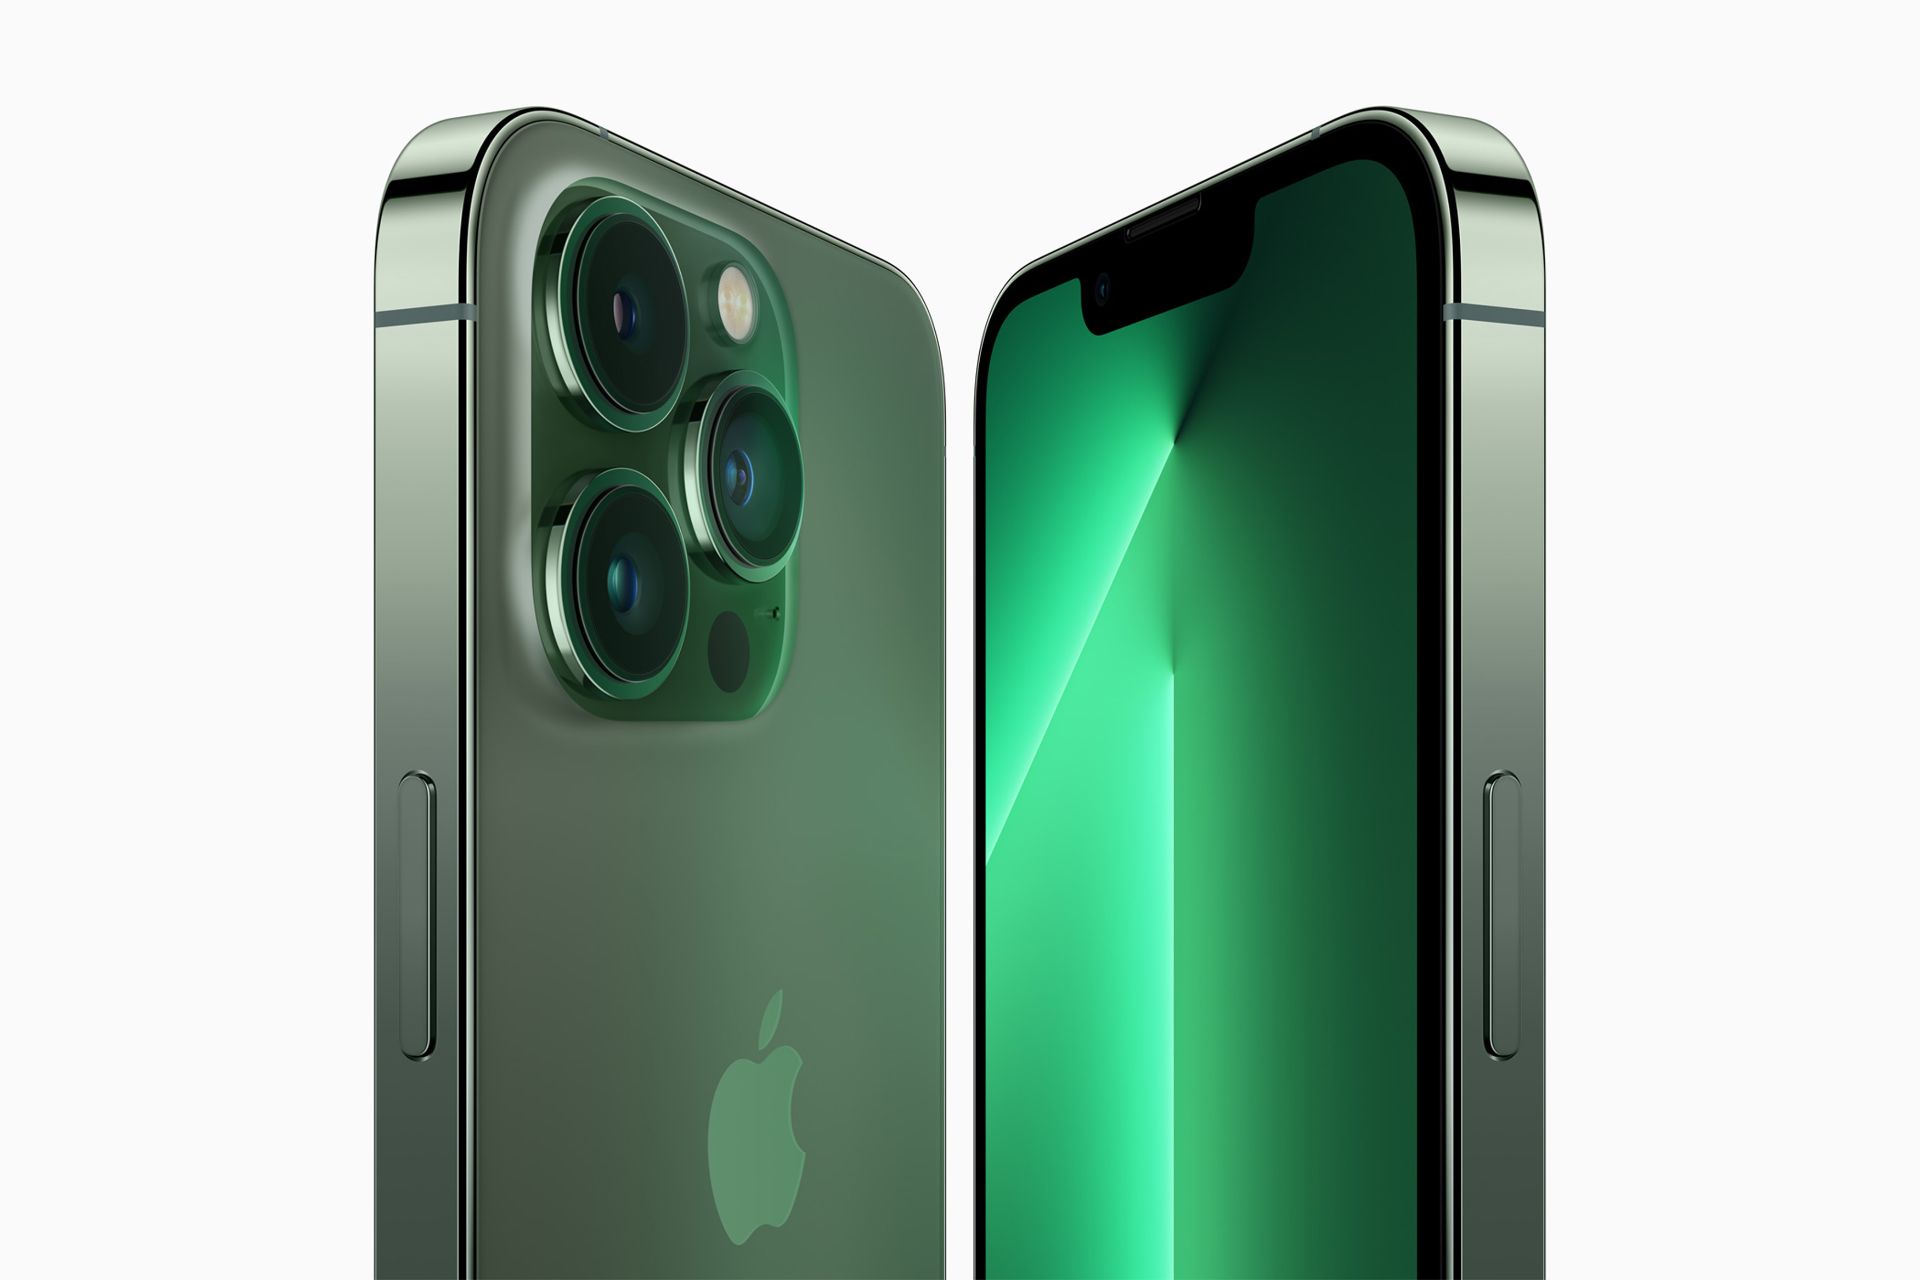 نمای جلو و عقب و کنار آیفون ۱۳ پرو اپل / iPhone 13 Pro در رنگ سبز